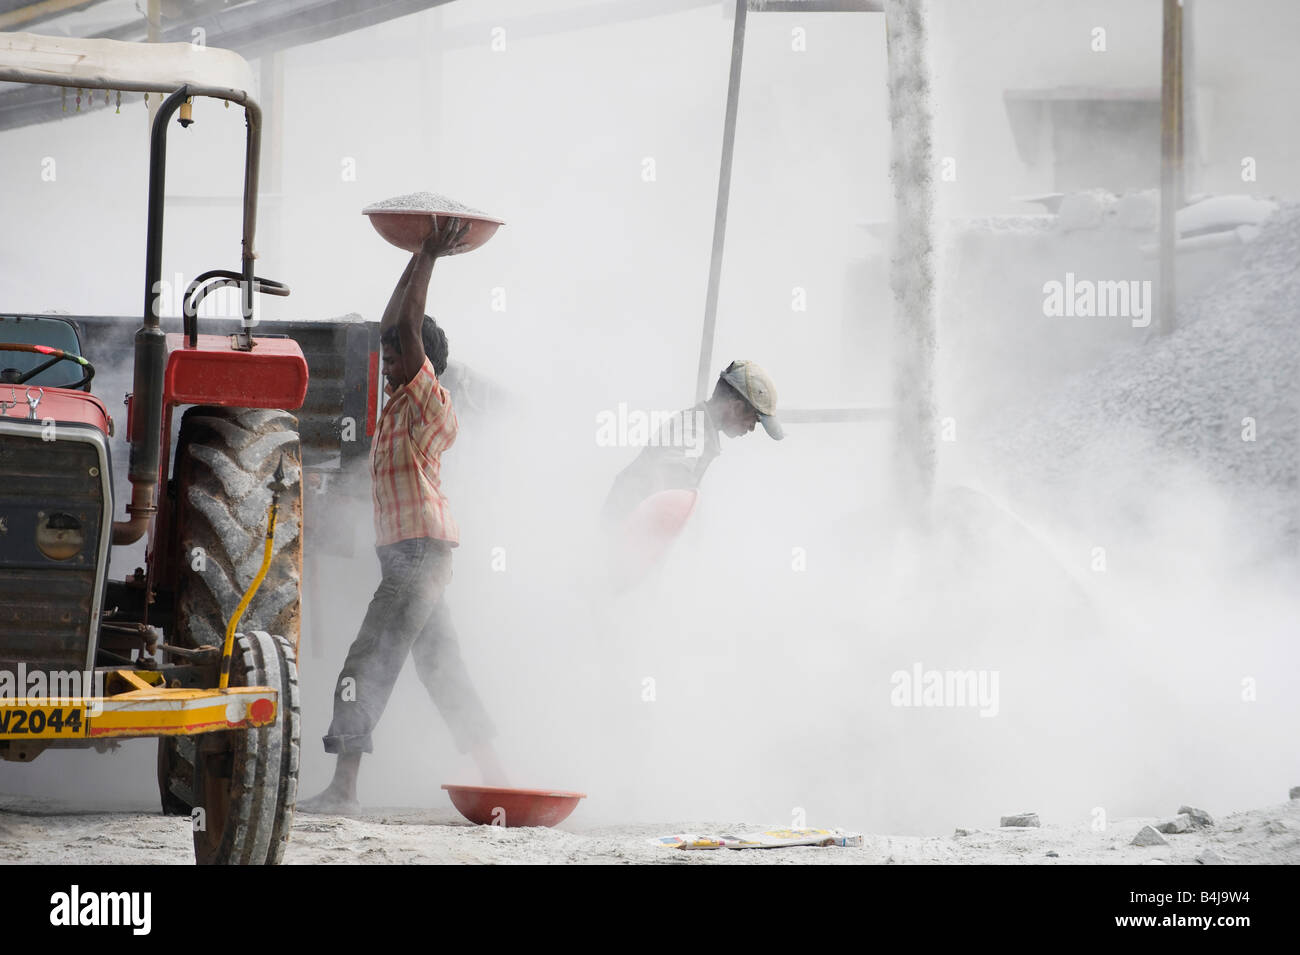 Les hommes indiens de mettre de la pierre concassée dans une remorque, entouré par la poussière, sans protection, à l'écrasement fonctionne. L'Andhra Pradesh. L'Inde Banque D'Images